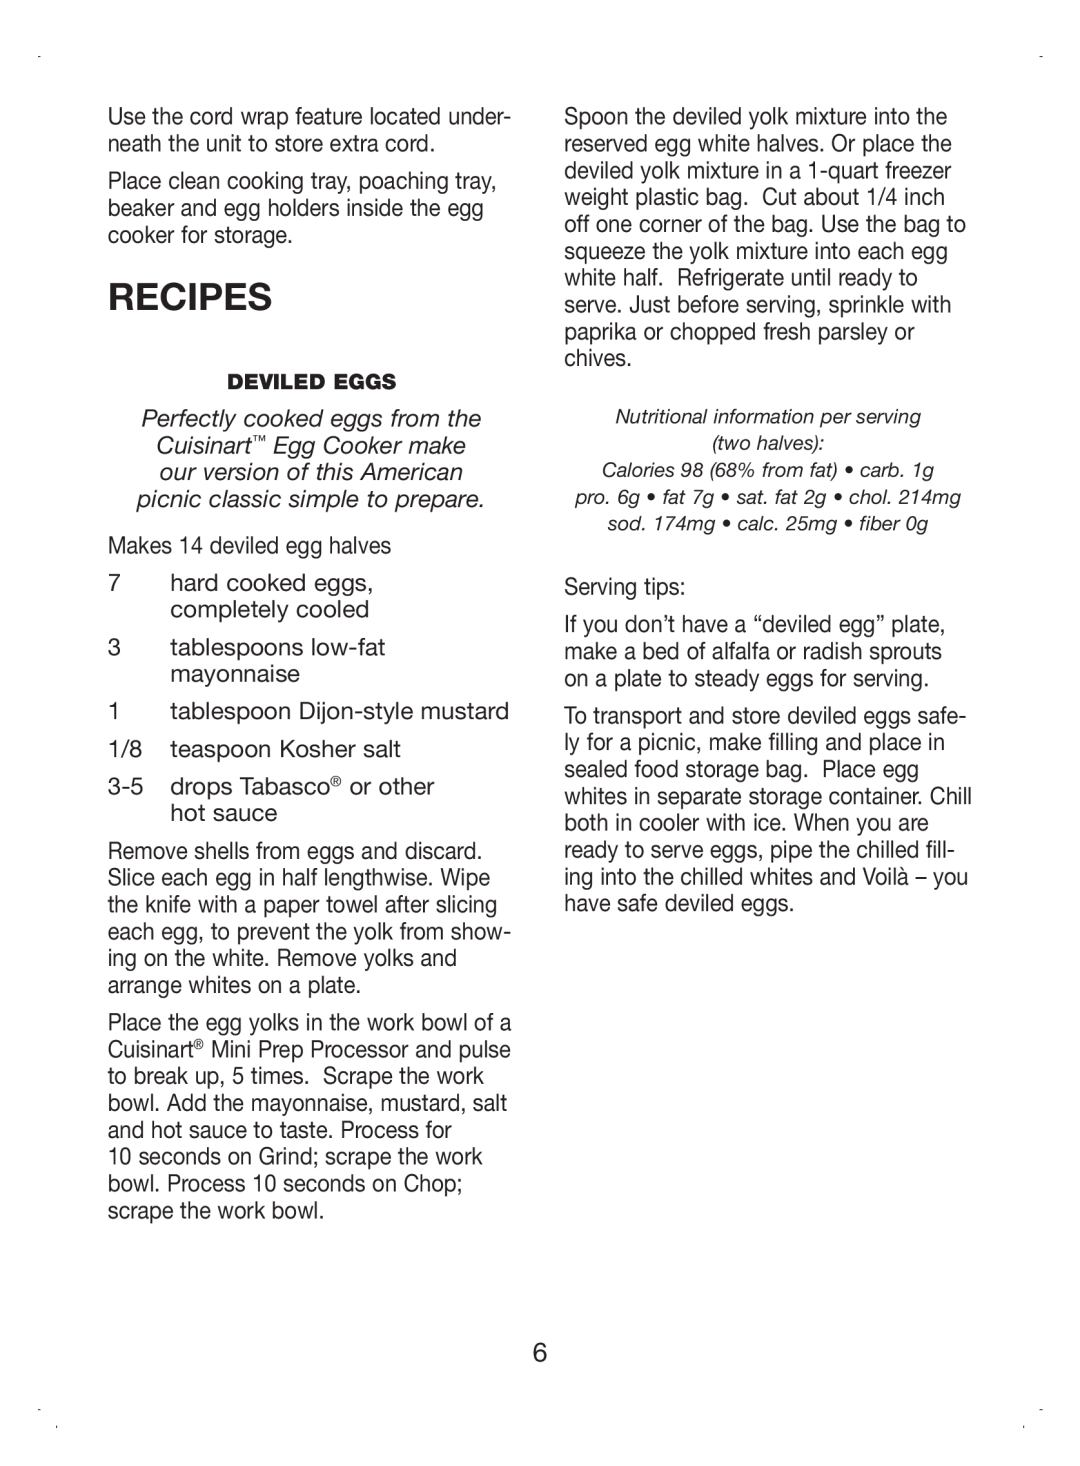 Cuisinart CEC-7 manual Recipes 